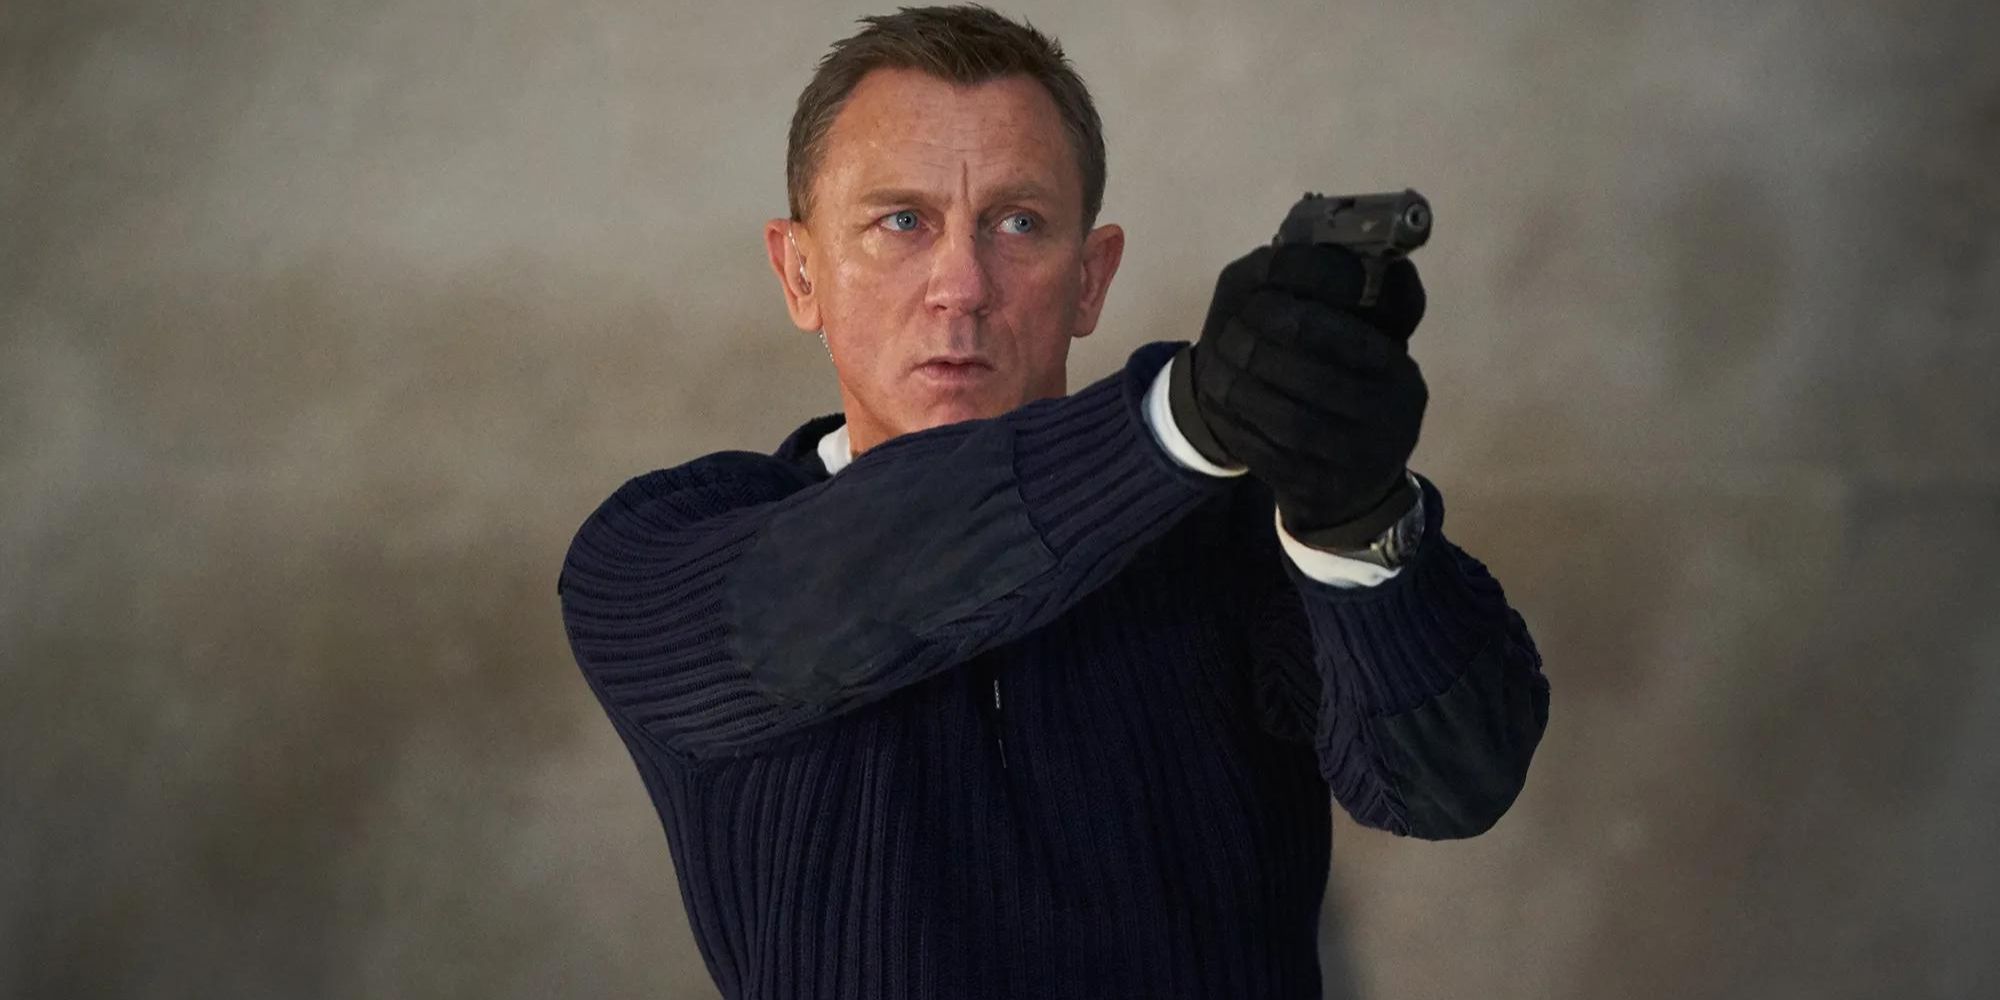 James Bond 26 Can't Repeat The Craig Era's Copycat Trick Despite A New $1 Billion BlueprintJames Bond 26 Can't Repeat The Craig Era's Copycat Trick Despite A New $1 Billion Blueprint